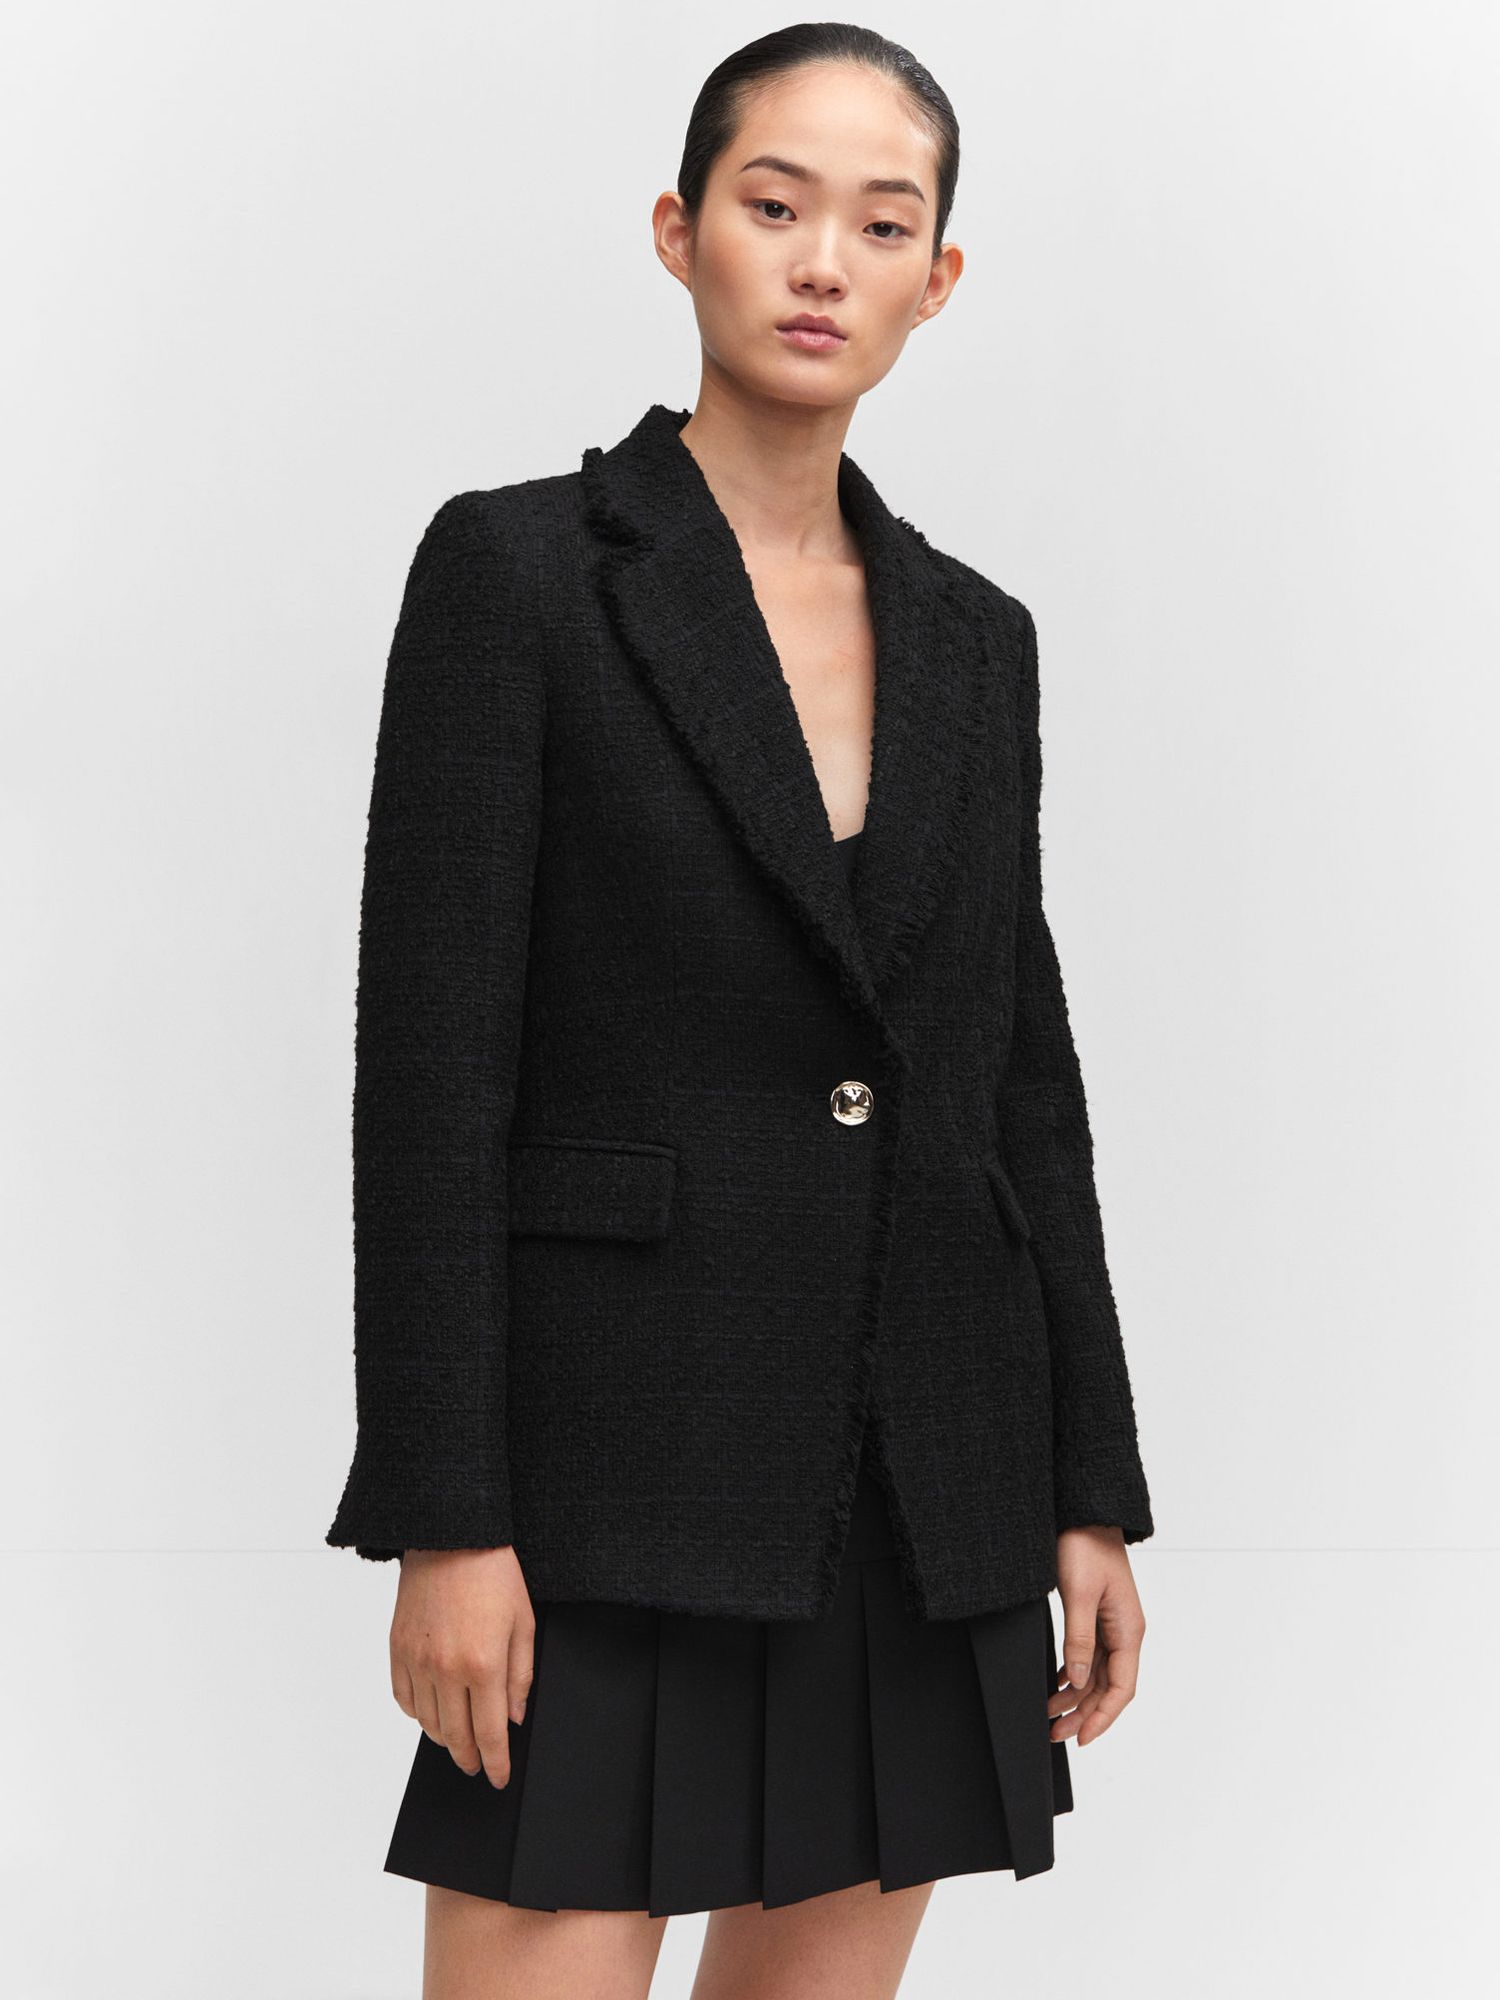 Mango Quintin Tweed Frayed Detail Blazer, Black at John Lewis & Partners